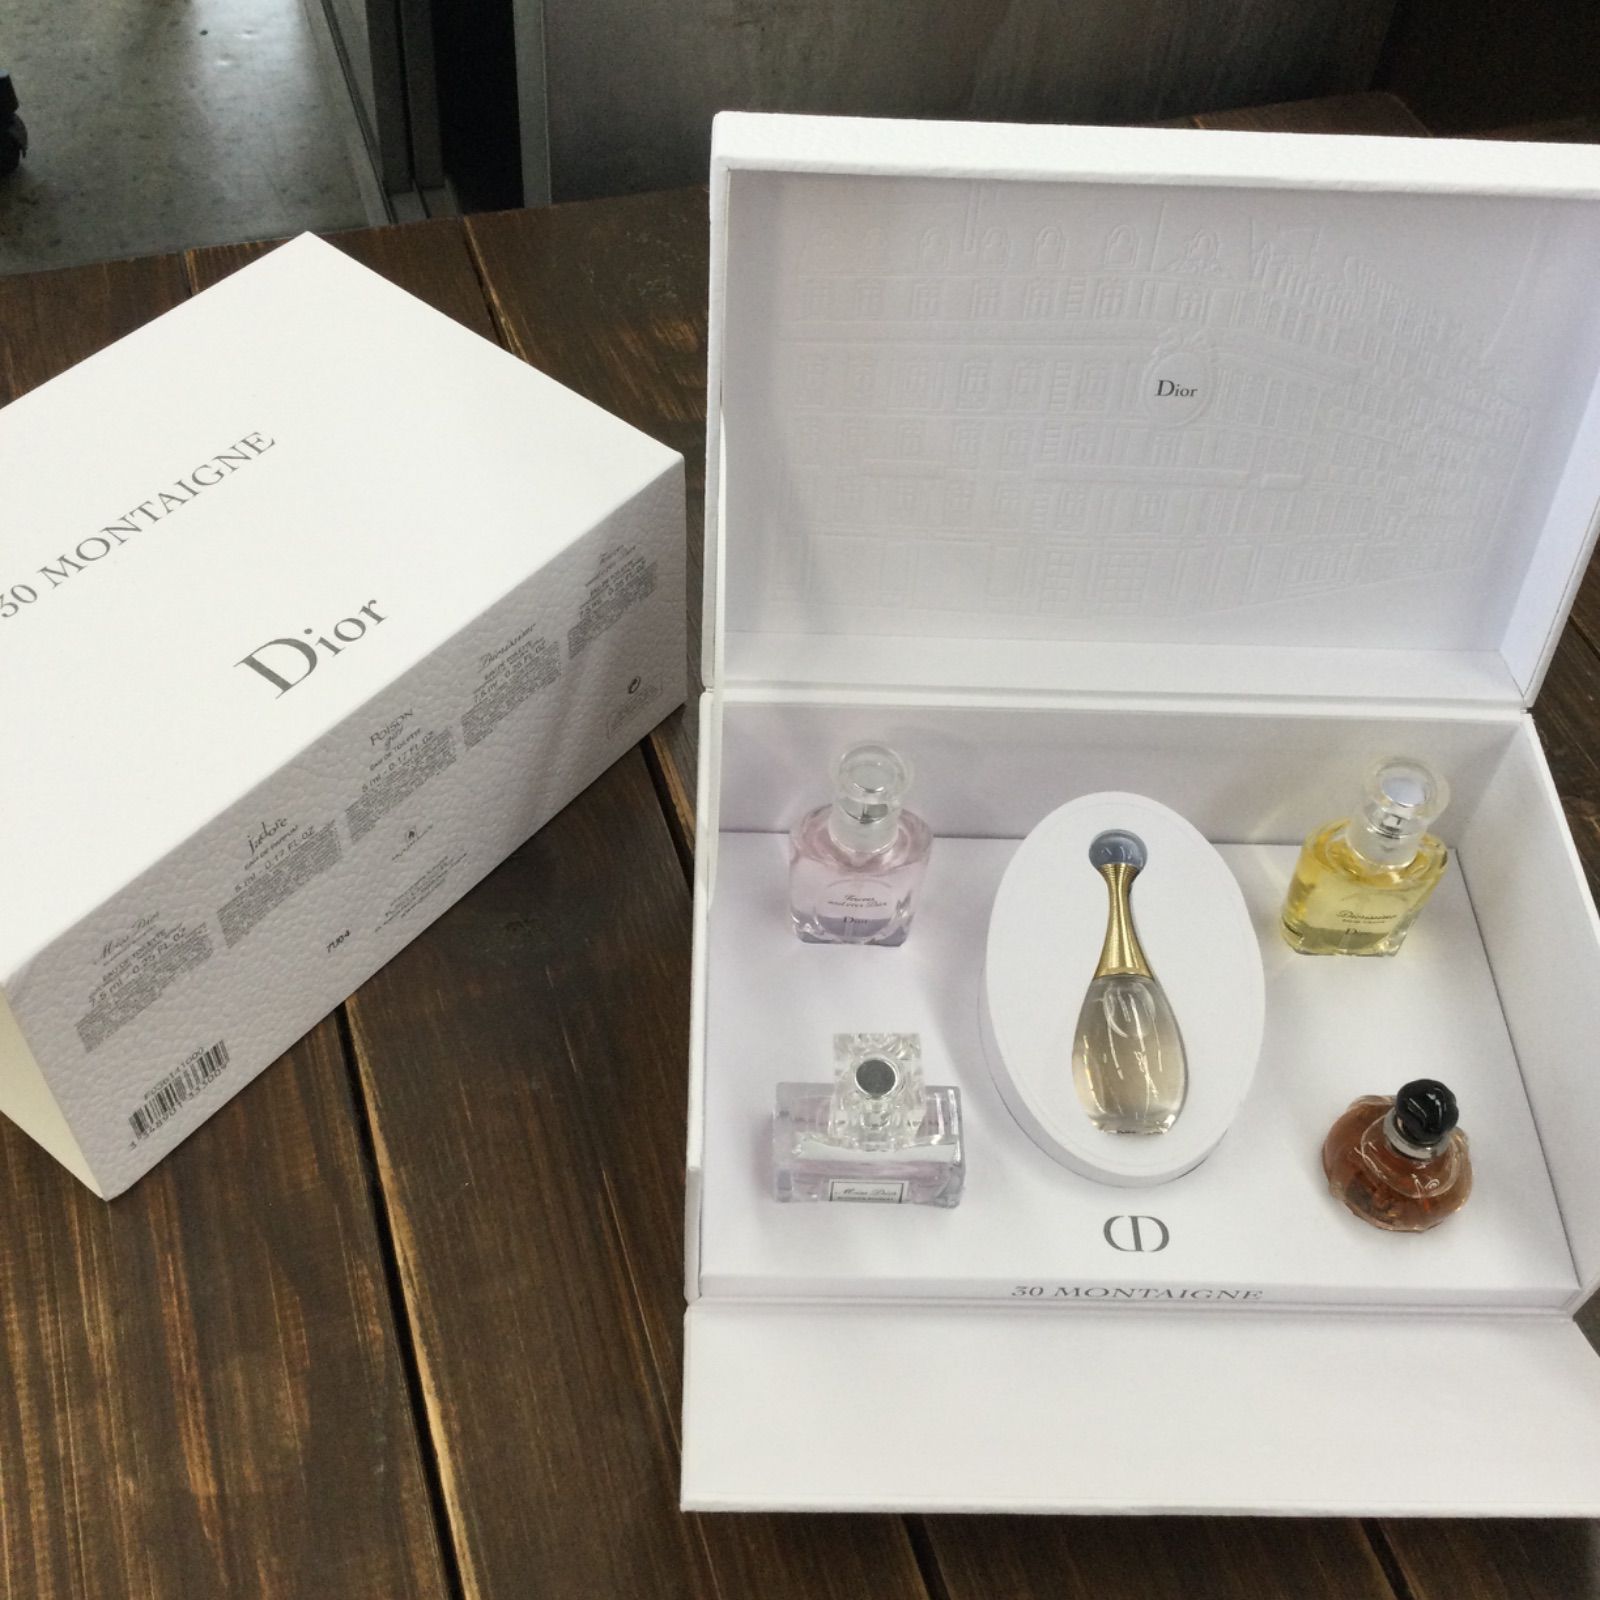 新品未使用/Dior 30 MONTAIGNE ミニ香水セット - メルカリ